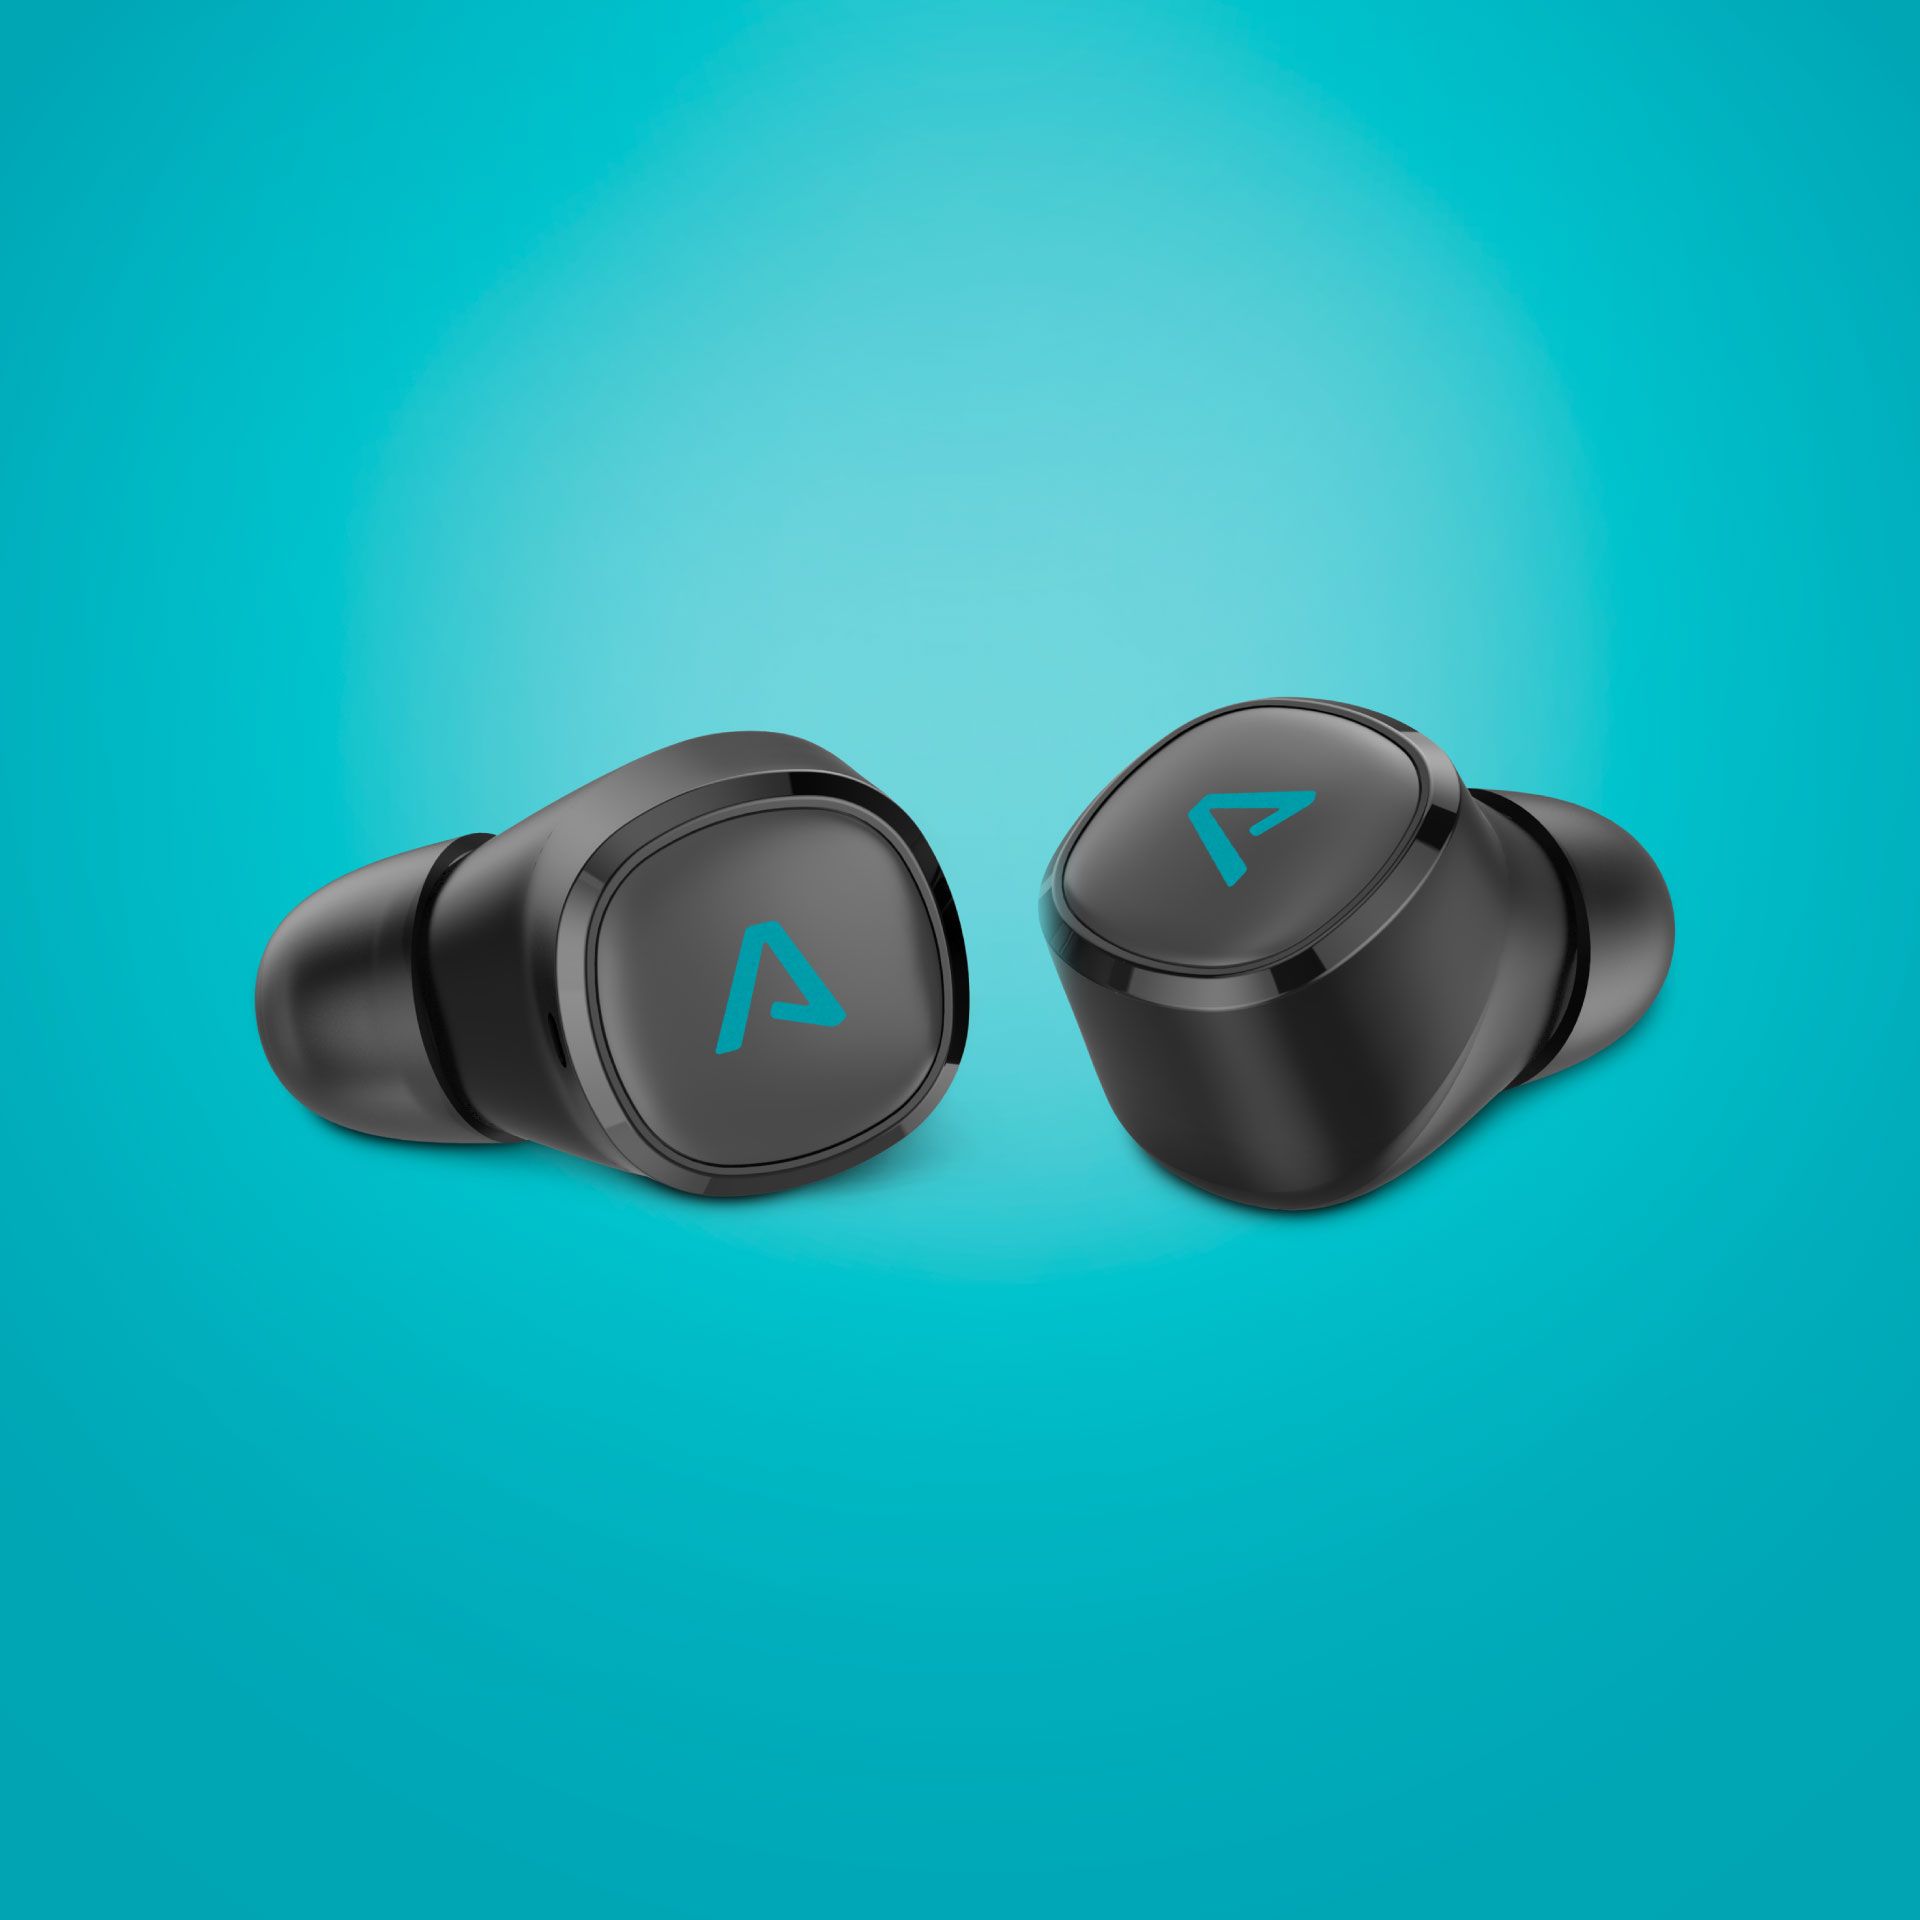  bežične Bluetooth slušalice lamax dots2 beatbass neizobličen zvuk ugodan dizajn zatvoreni mikrofon za glasovnog asistenta za telefoniranje bez ruku dugo trajanje baterije upravljanje dodirom 